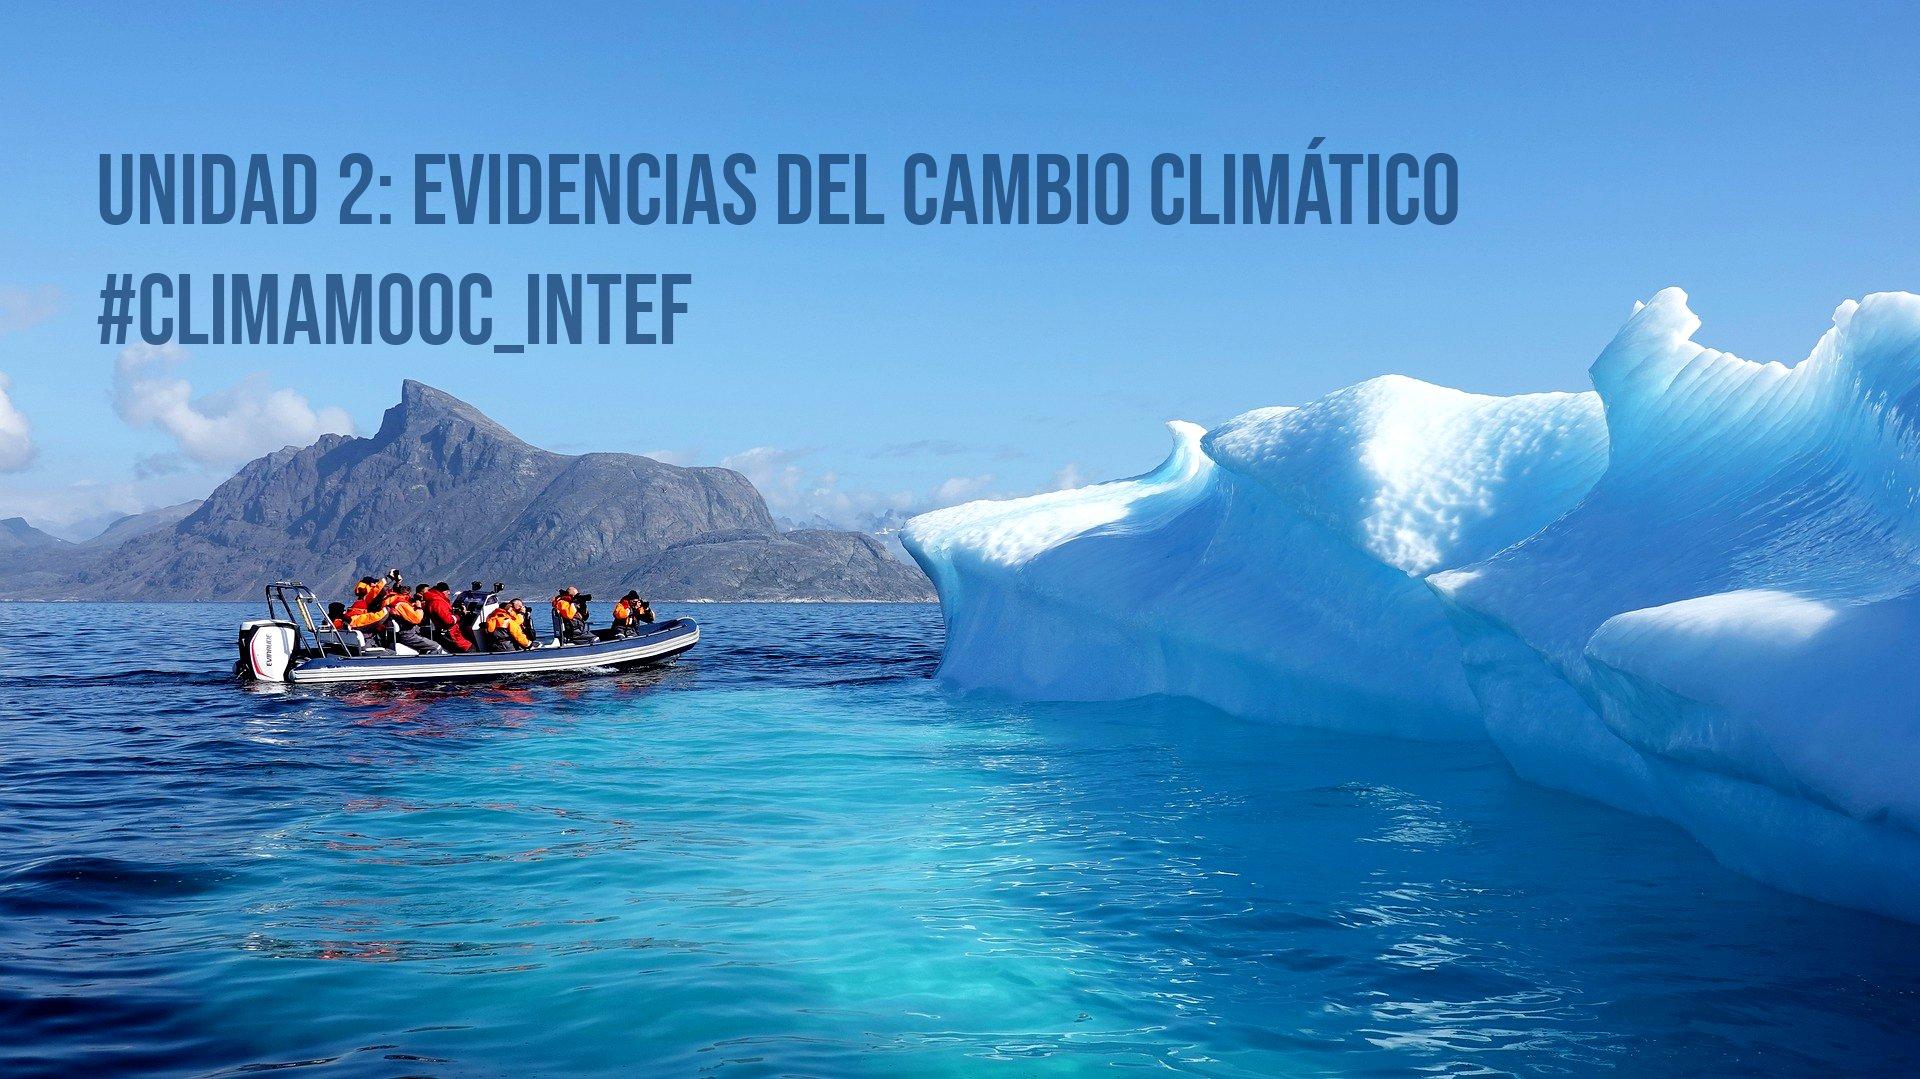 #ClimaMOOC_INTEF, Unidad 2: Evidencias del cambio climático